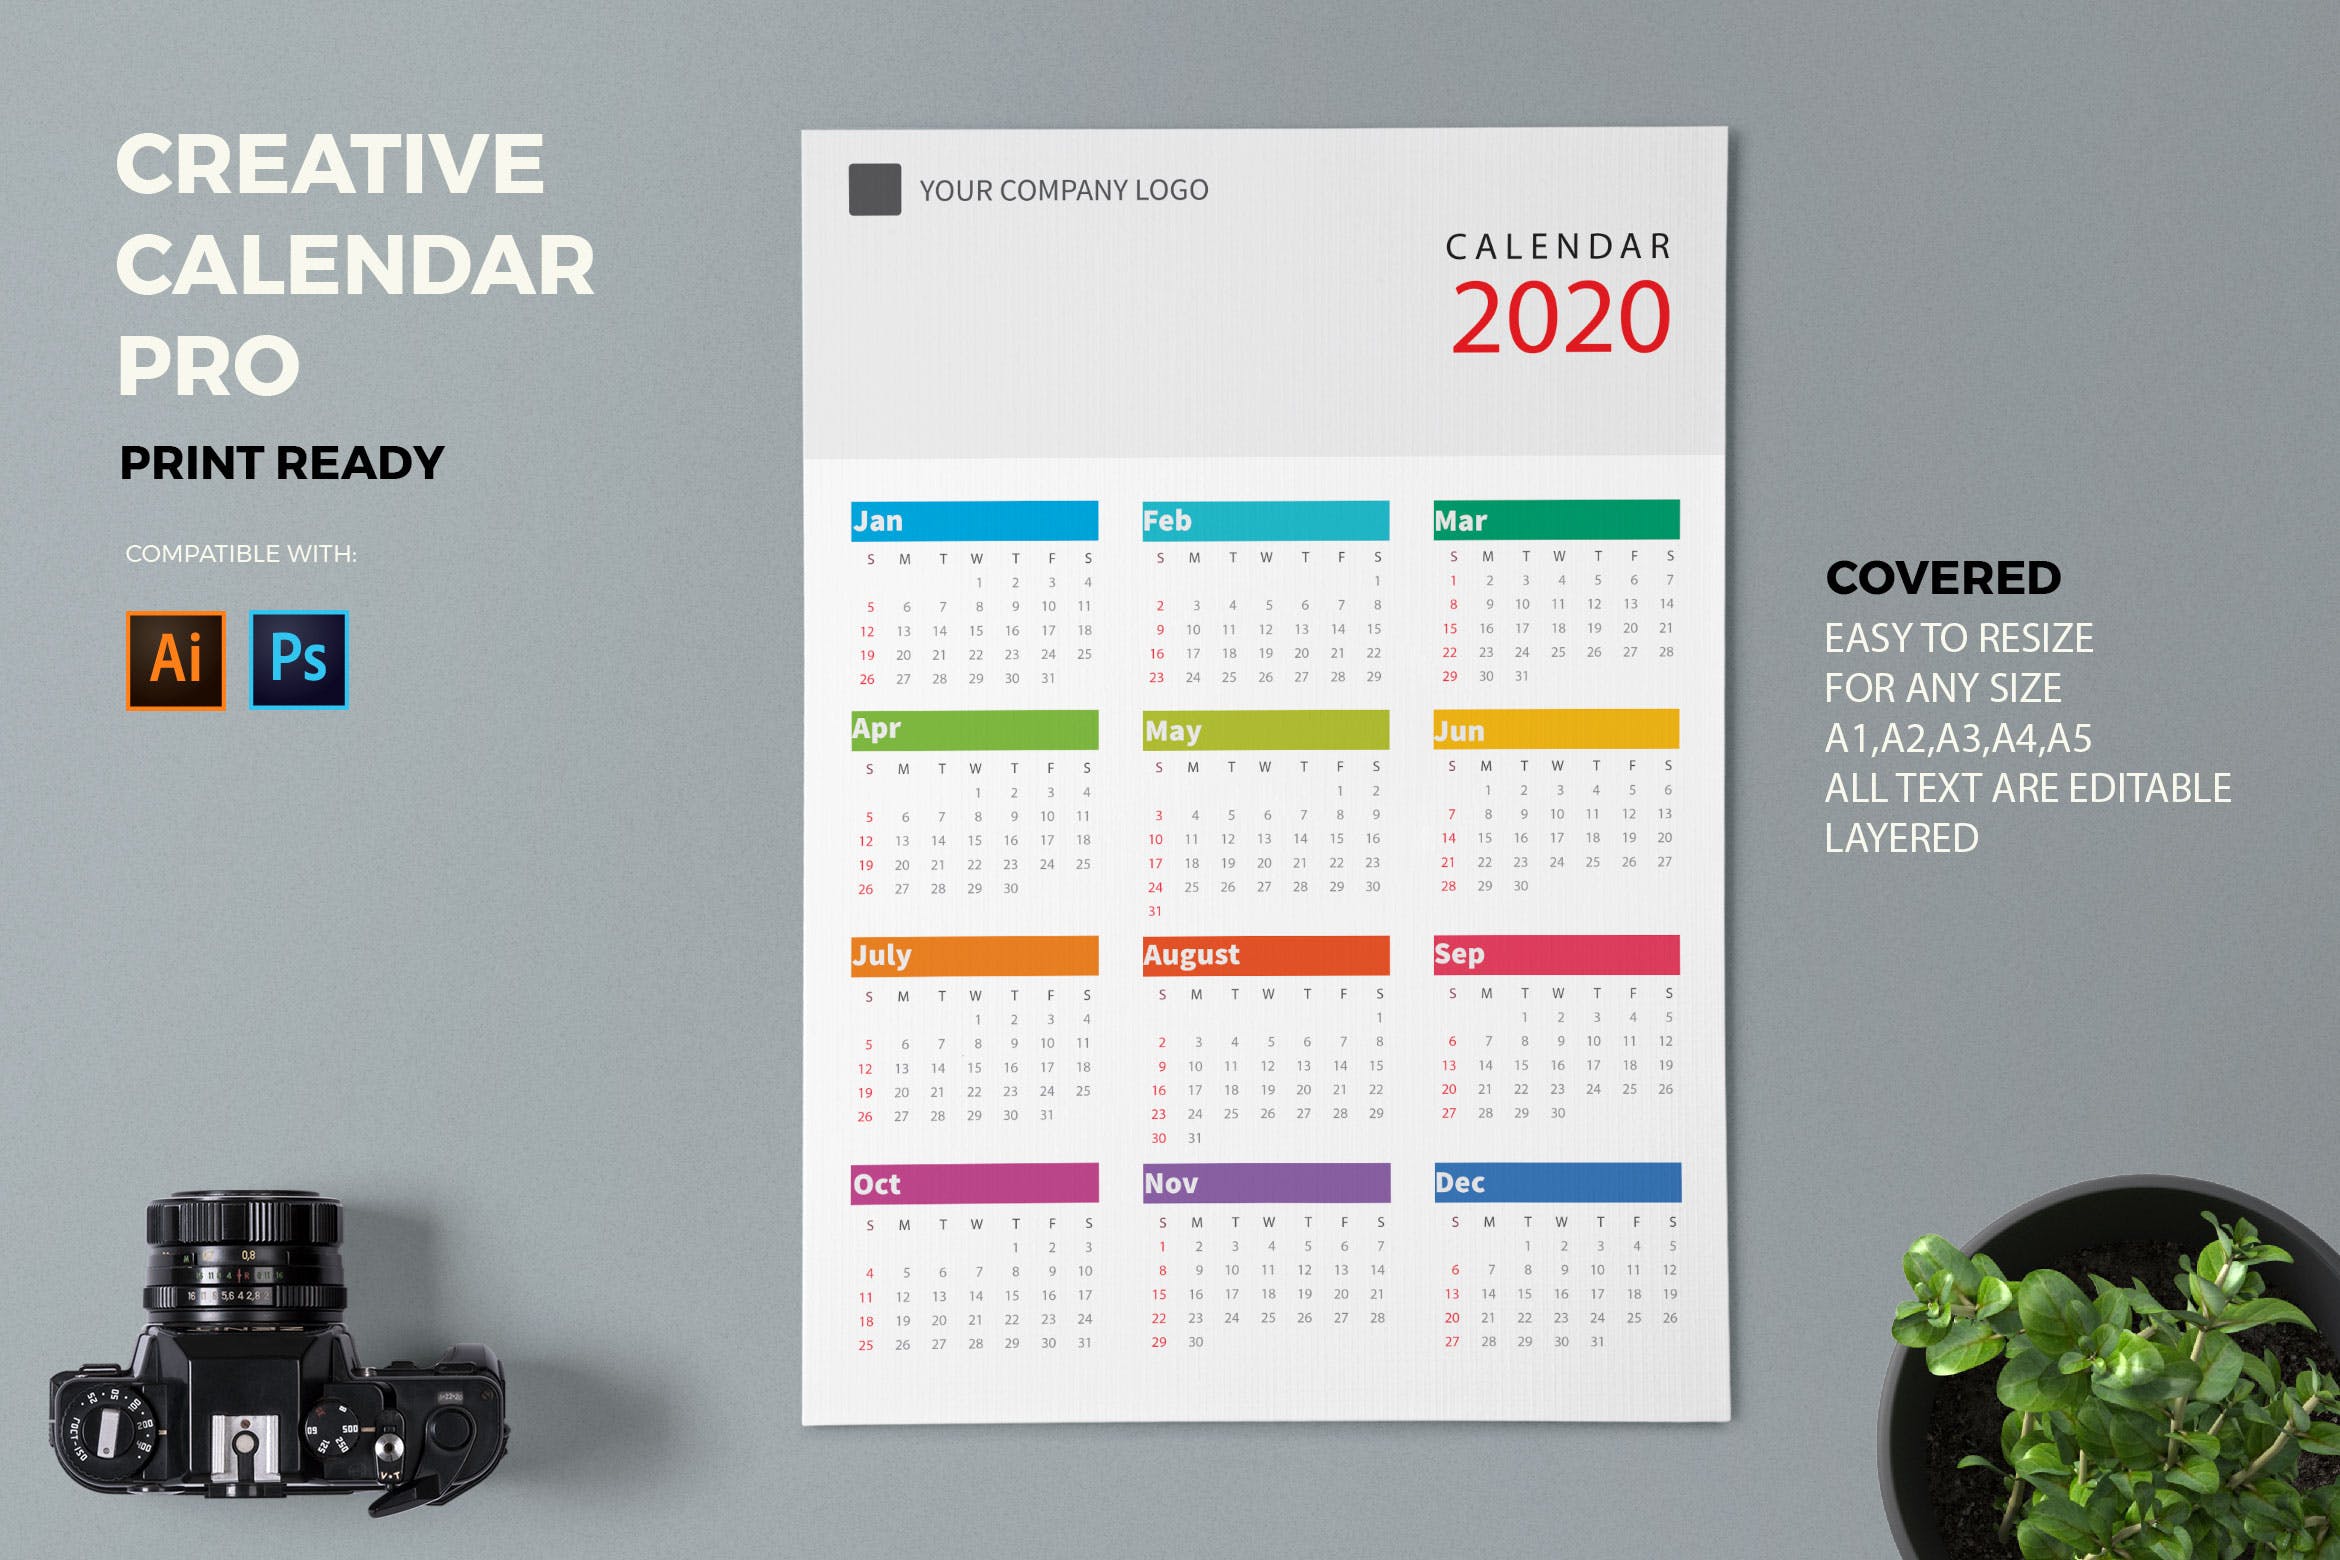 极简主义风格2020年历日历设计模板 Creative Calendar Pro 2020插图